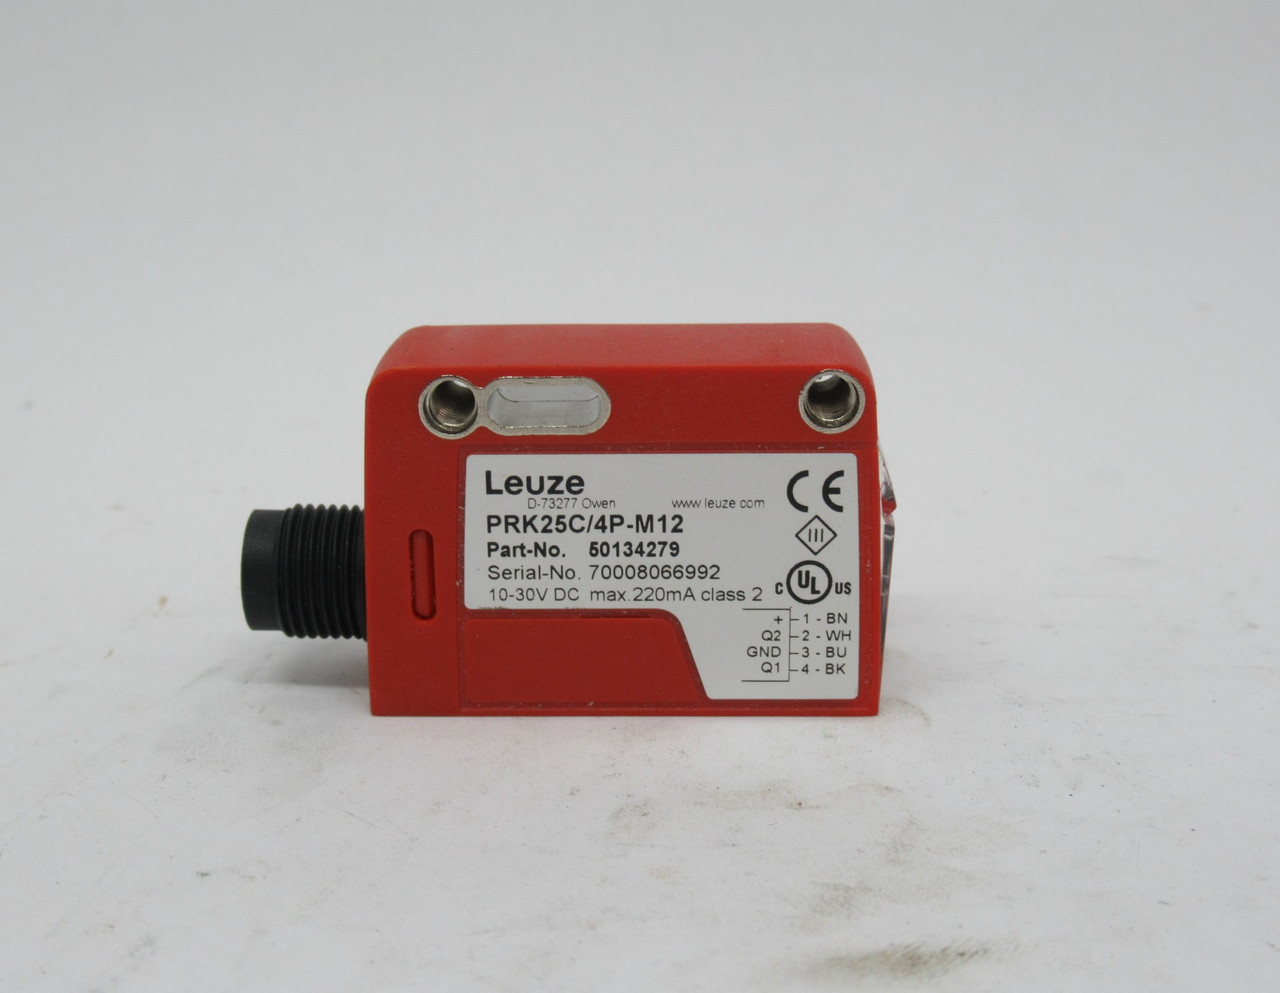 Leuze 50134279 Polarized Retro-Reflective Photoelectric Sensor 10-30VDC NEW